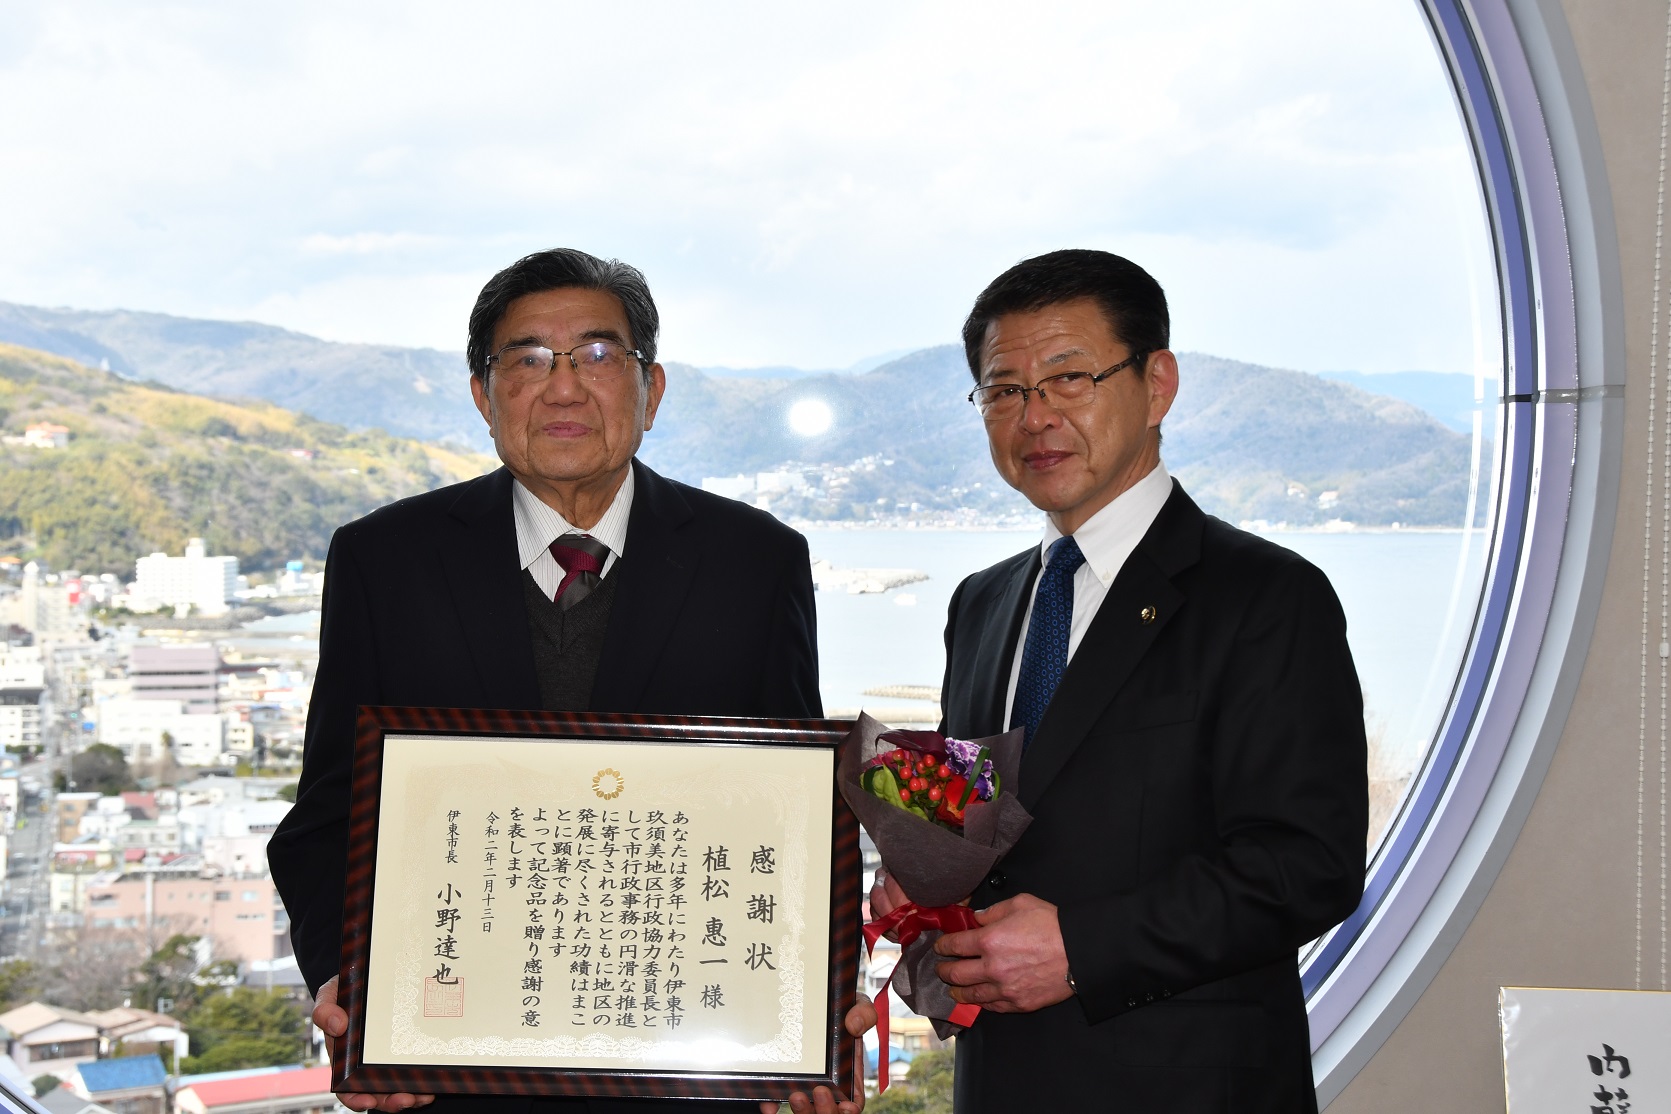 退任される植松・玖須美区長と記念撮影をする小野市長